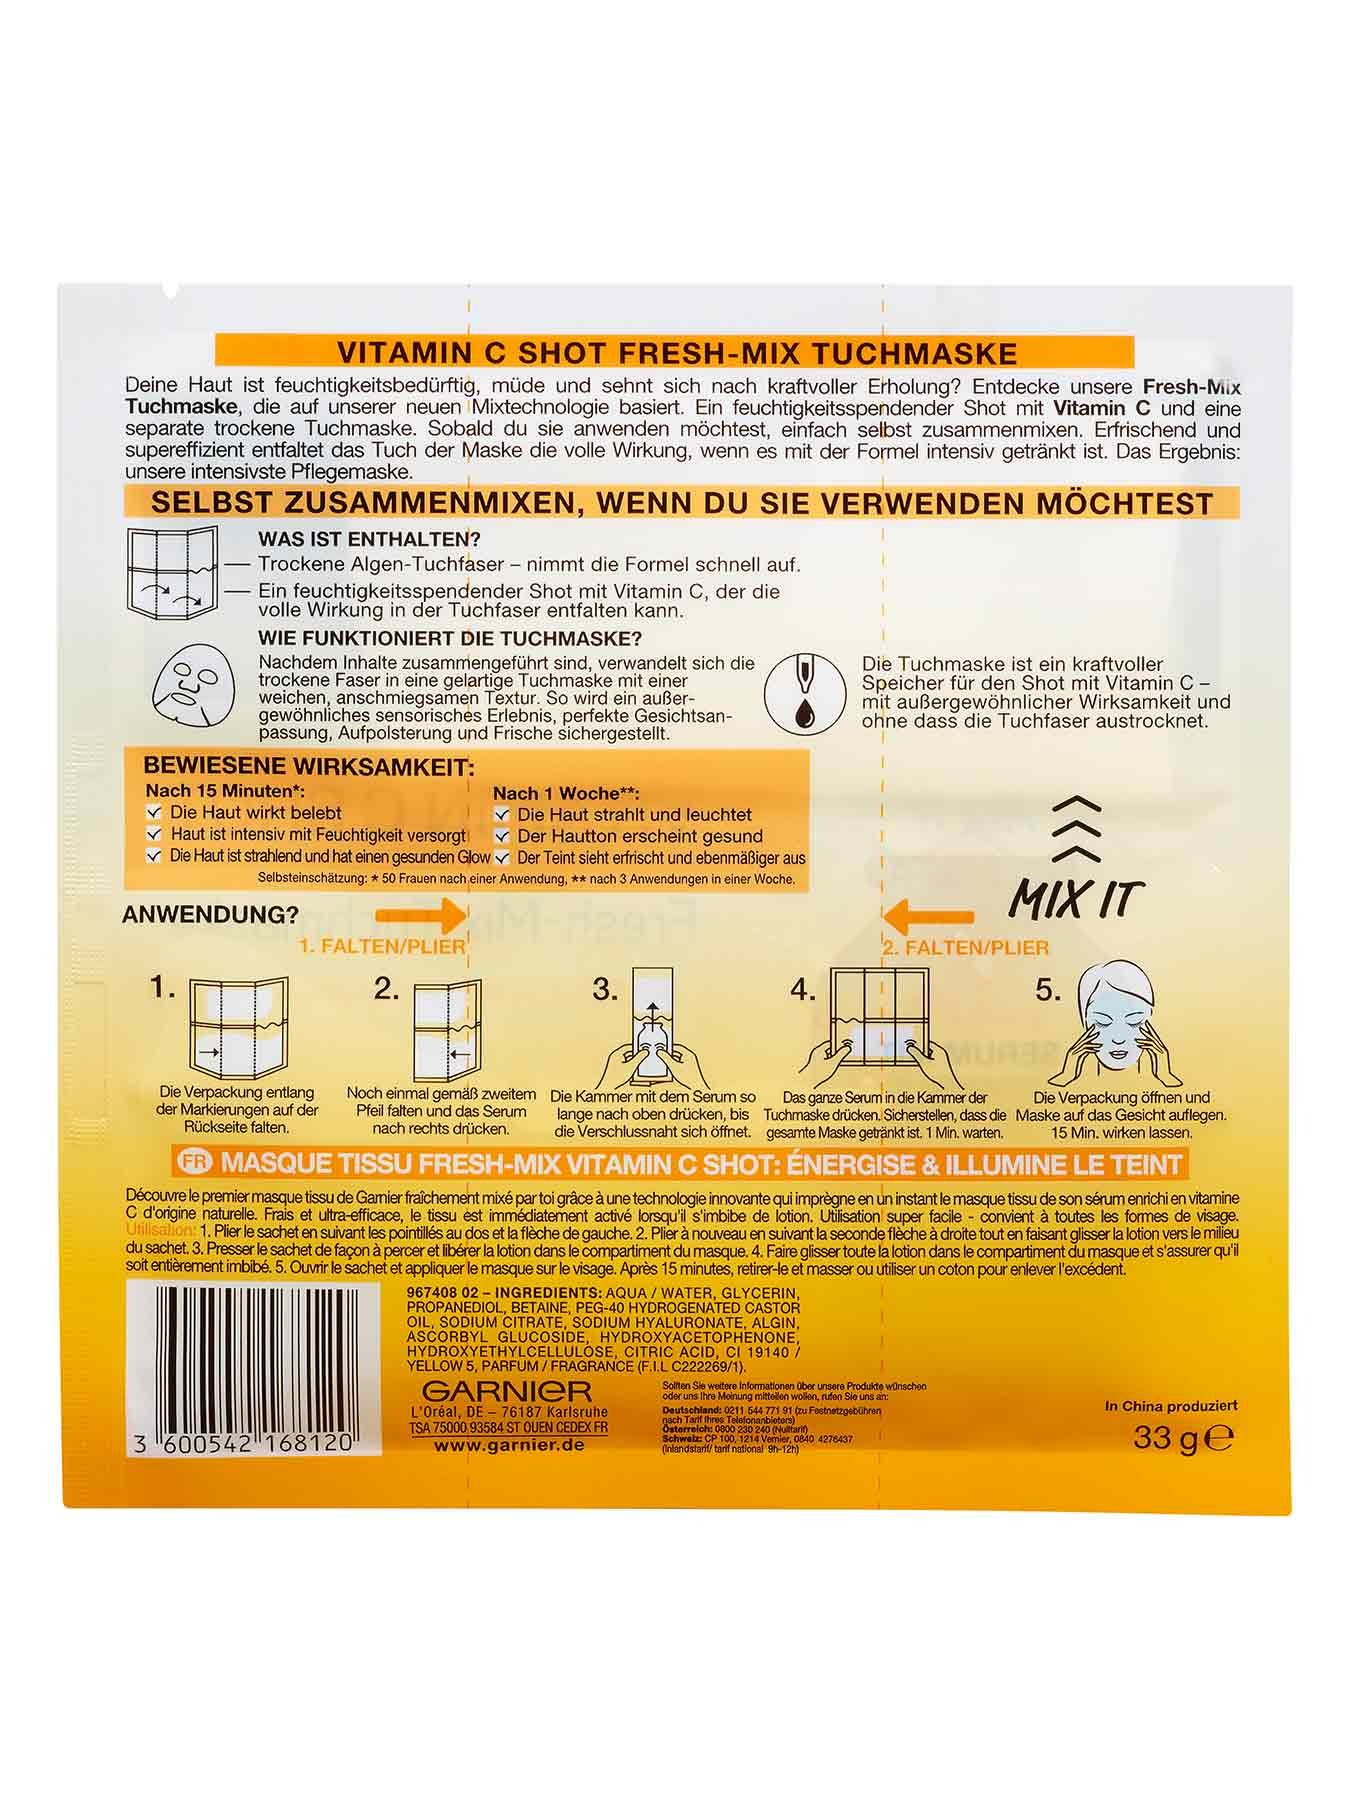 Vitamin-C-Shot-Fresh-Mix-Tuchmaske-Hydra-Bomb-33g-Rueckseite-Garnier-Deutschland-gross